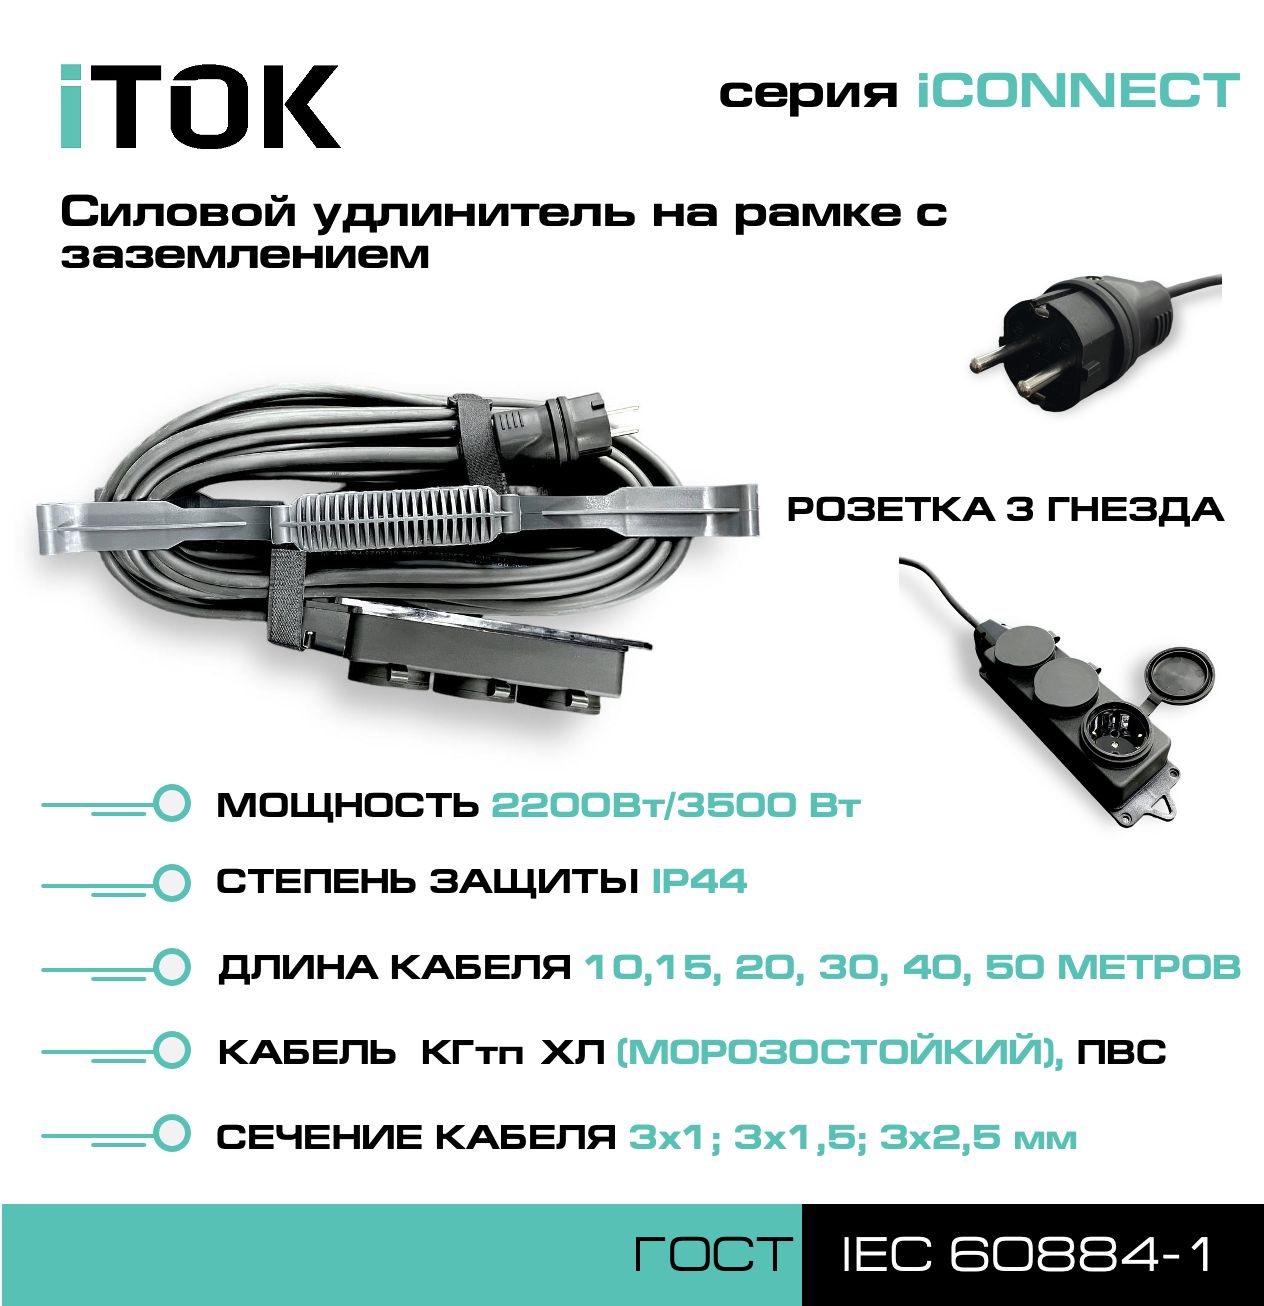 Удлинитель на рамке с заземлением серии iTOK iCONNECT ПВС 3х2,5 мм 3 гнезда IP44 15 м зарядные гнезда usb в виде клавиши marina 4 2 а вольтметр more 10264238